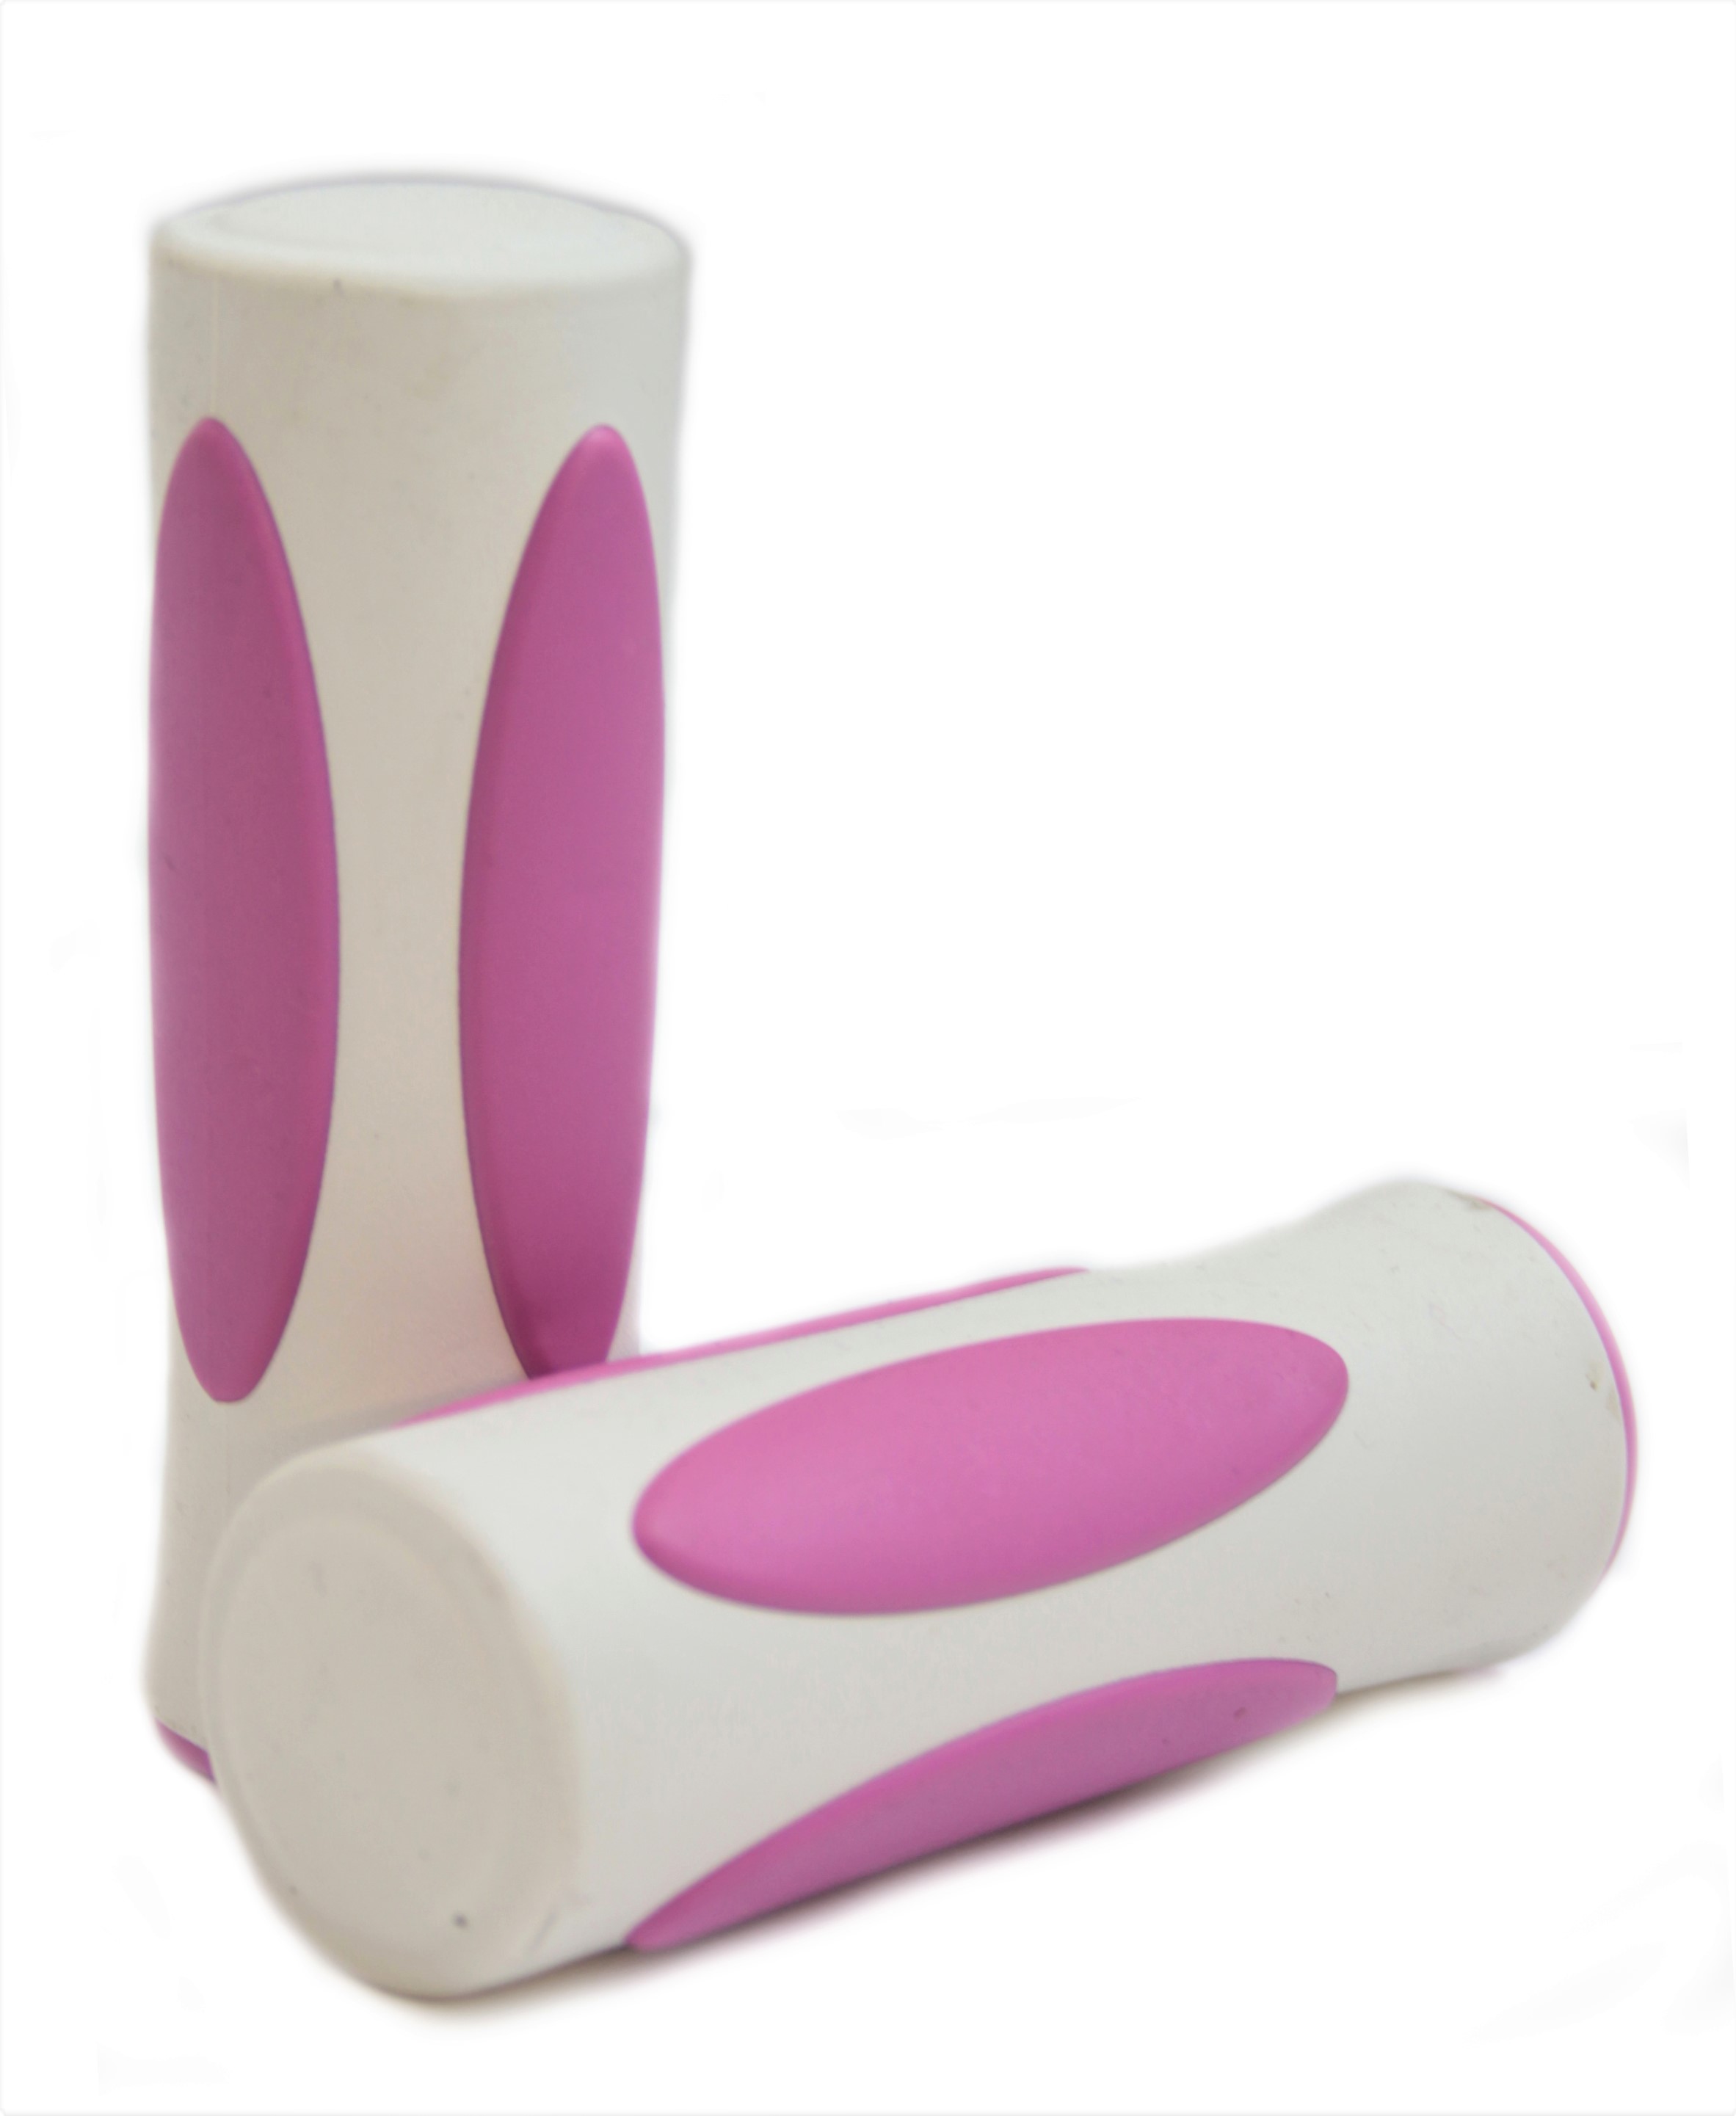 Handlebar Grips, Delight white pink short + short